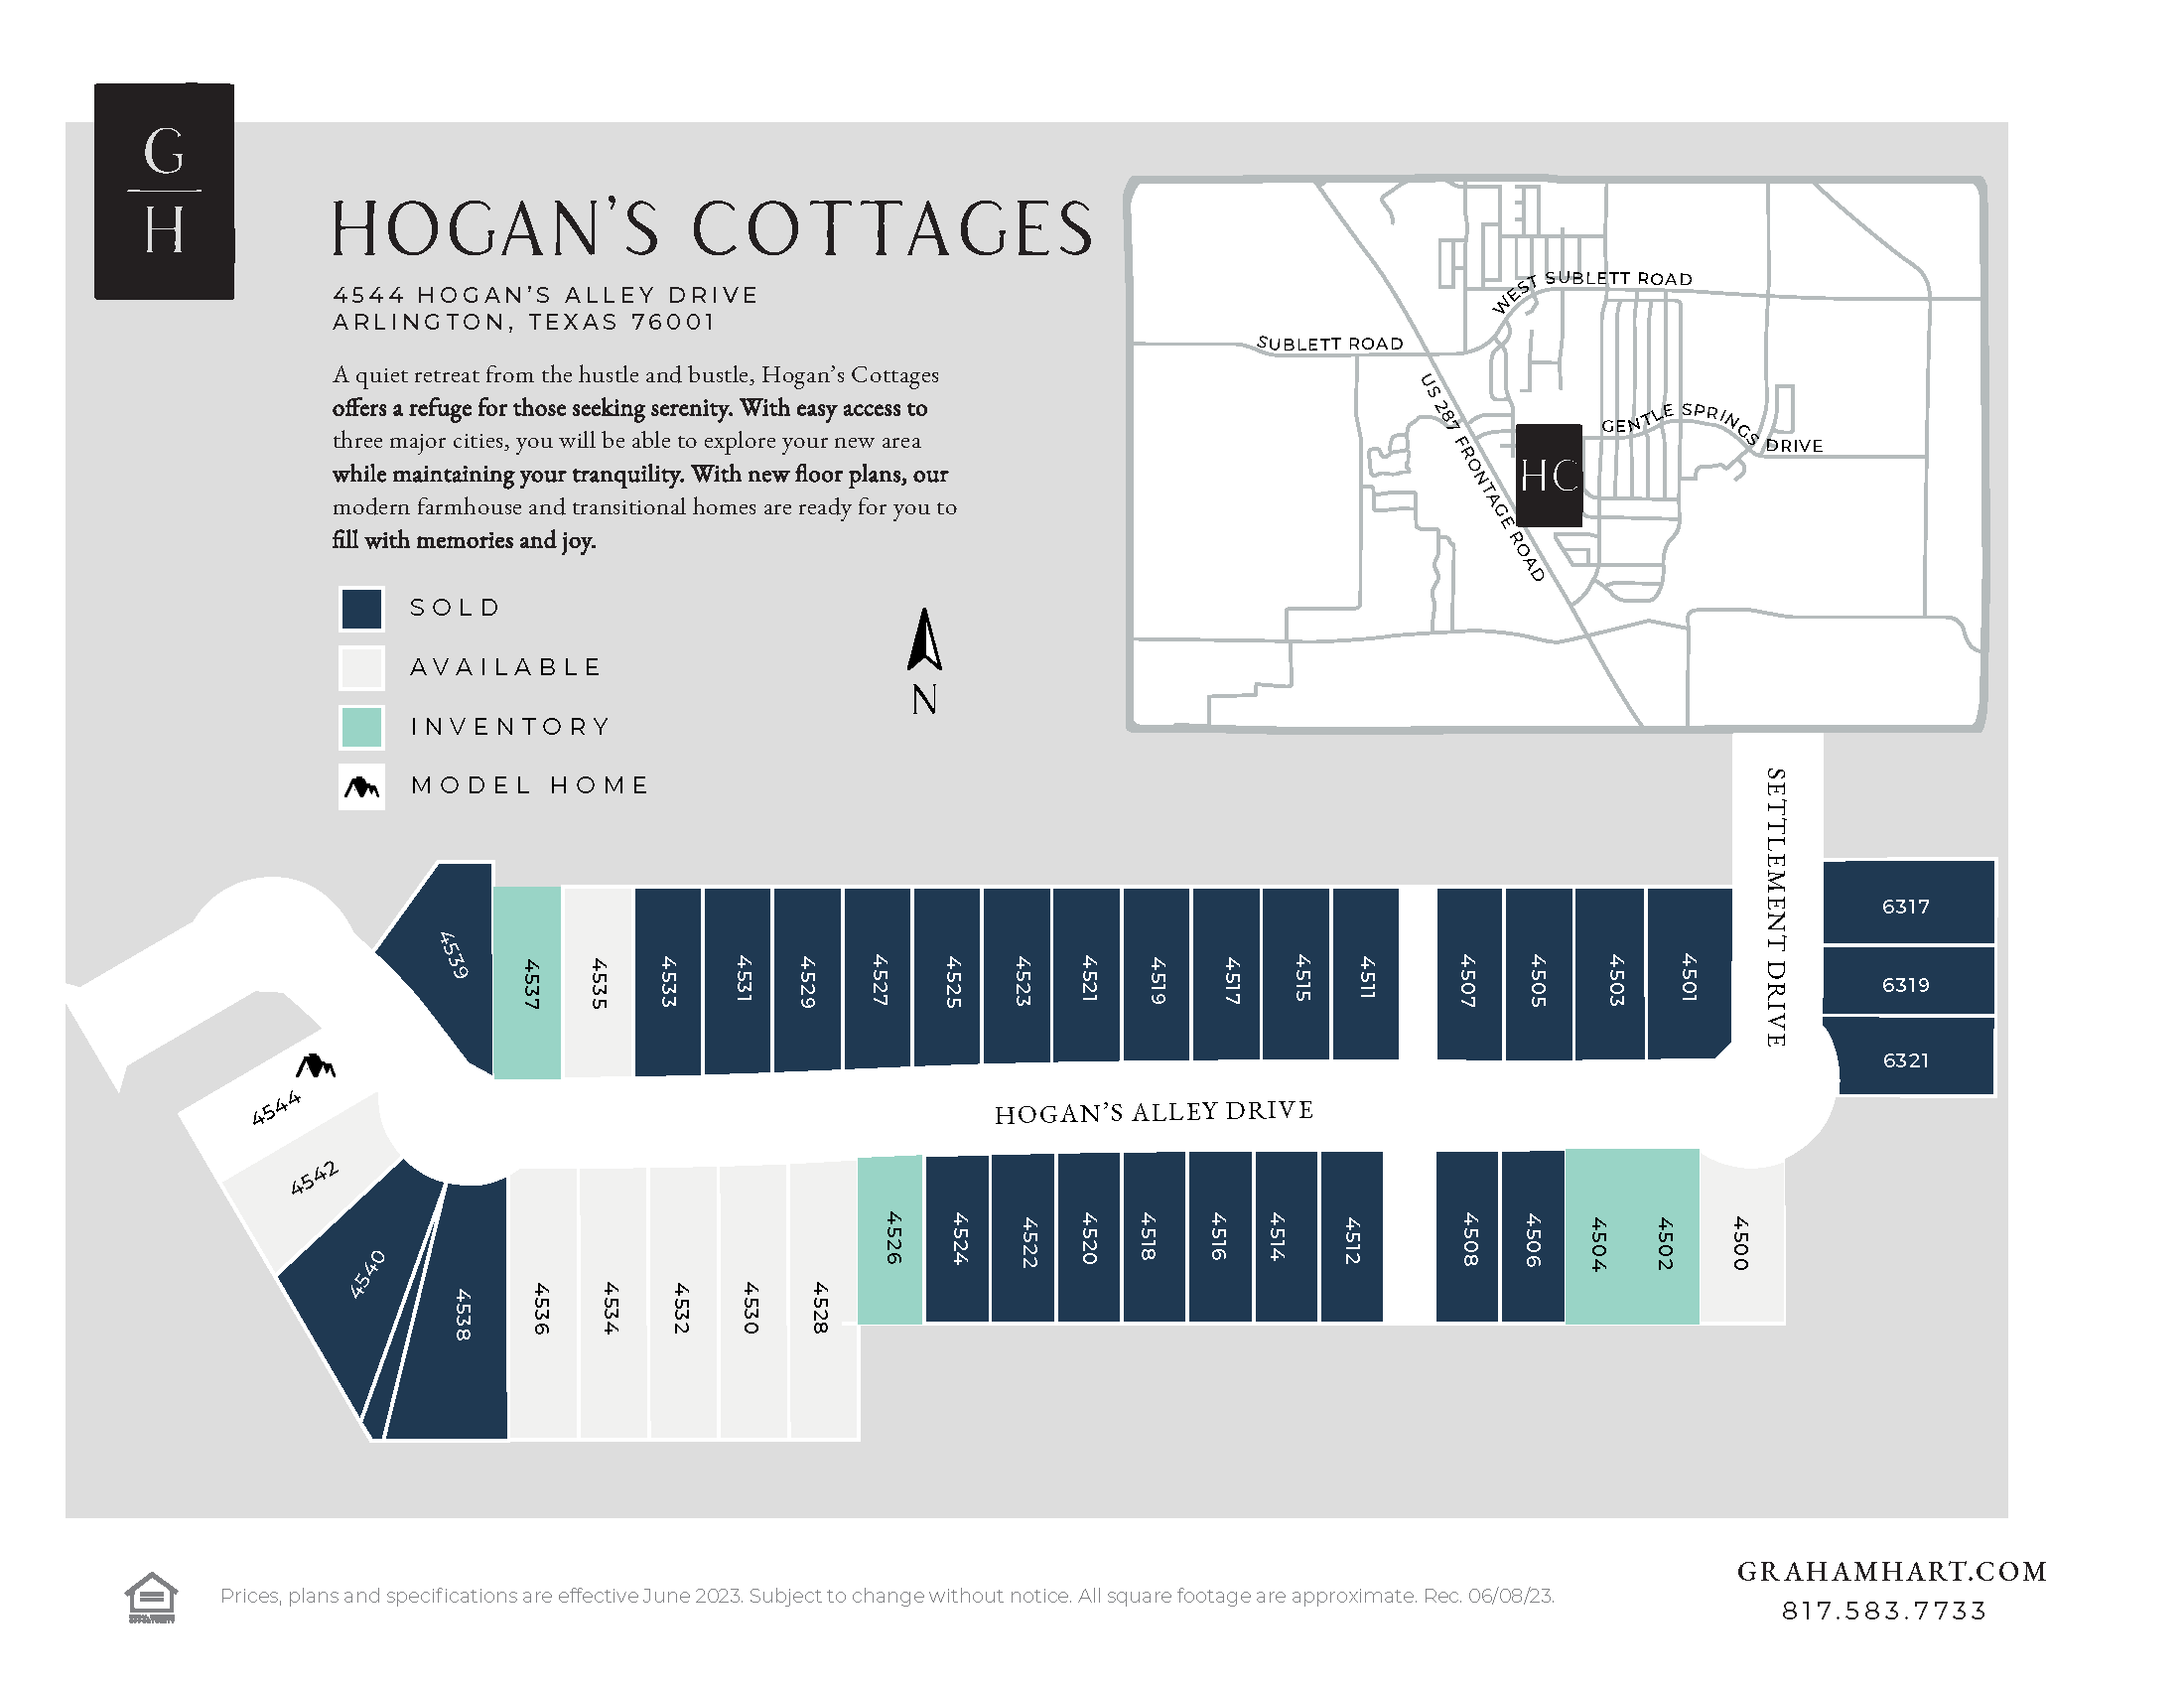 Hogan’s Cottages community plat map